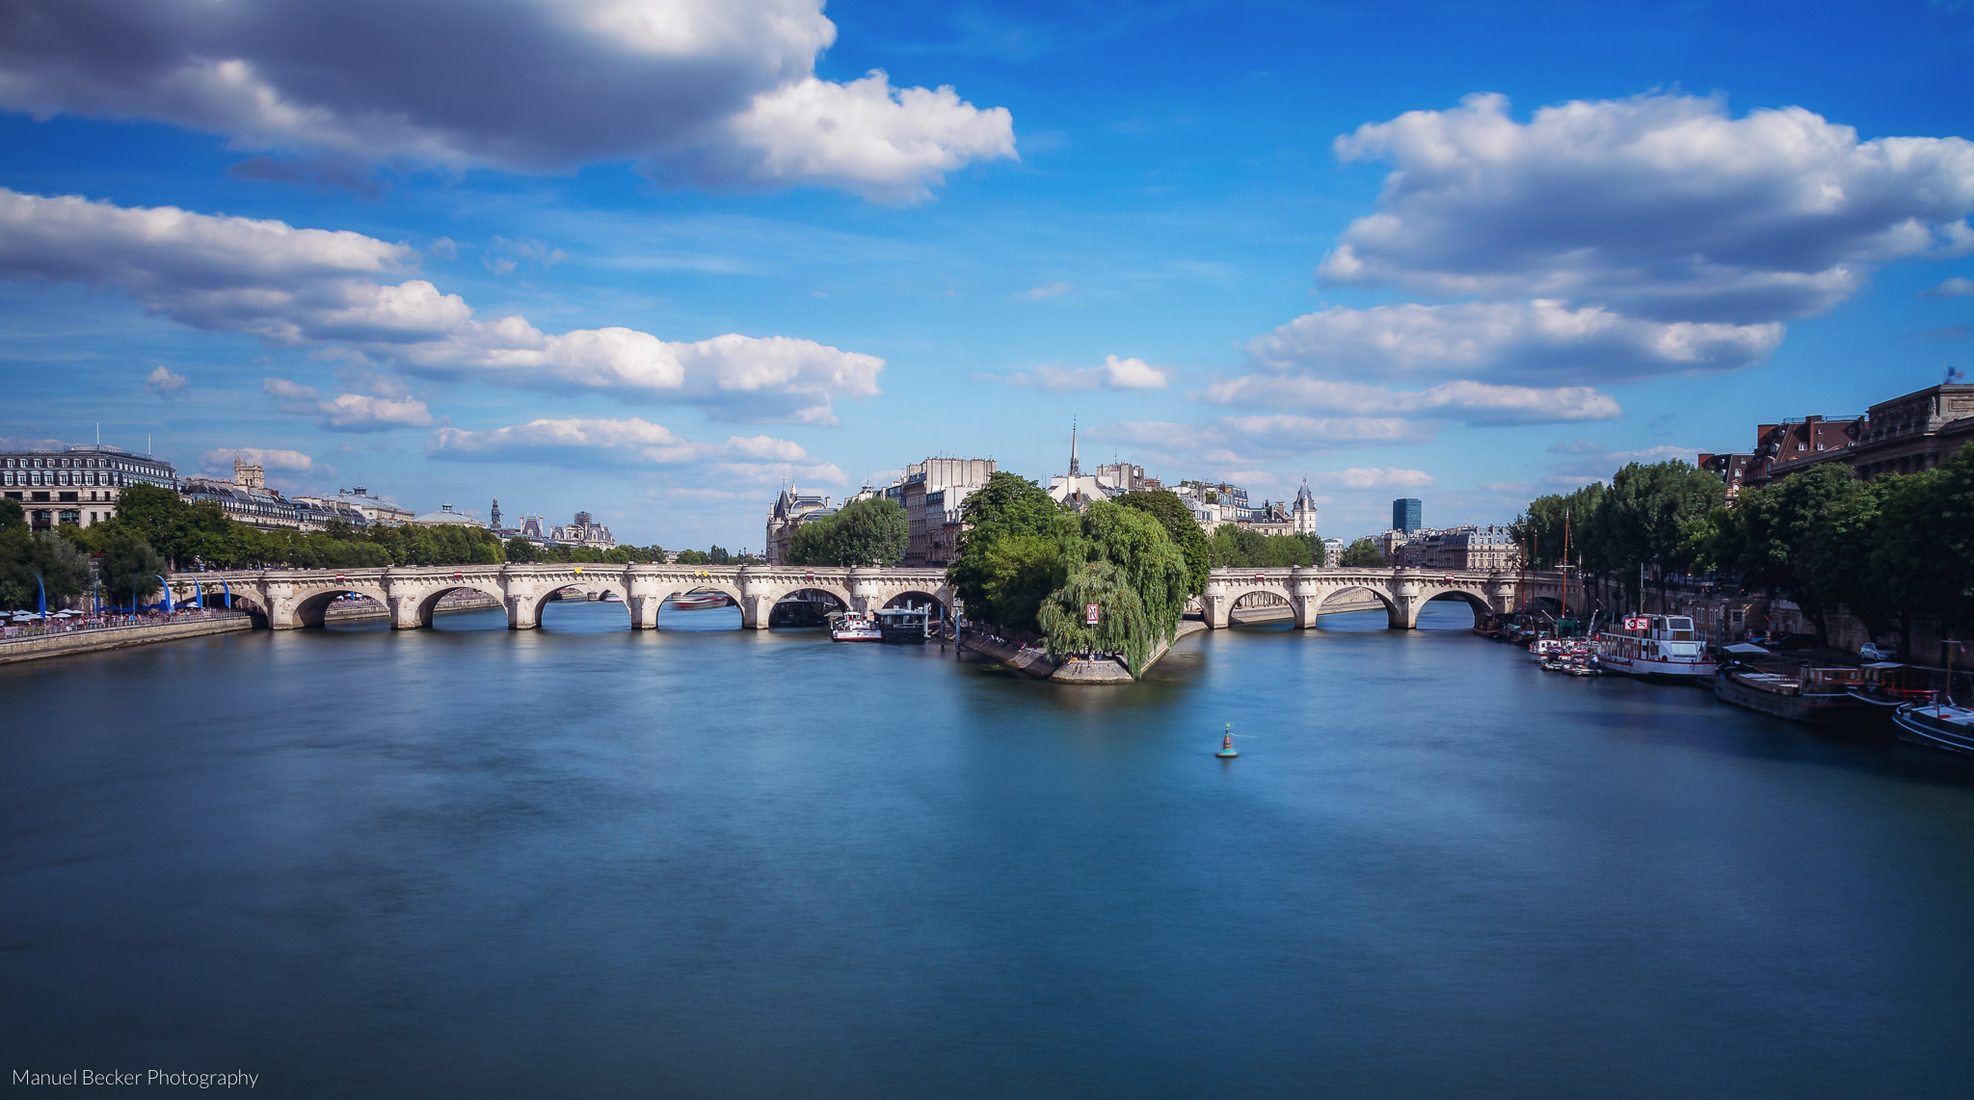 Around the Pont Neuf, Paris 